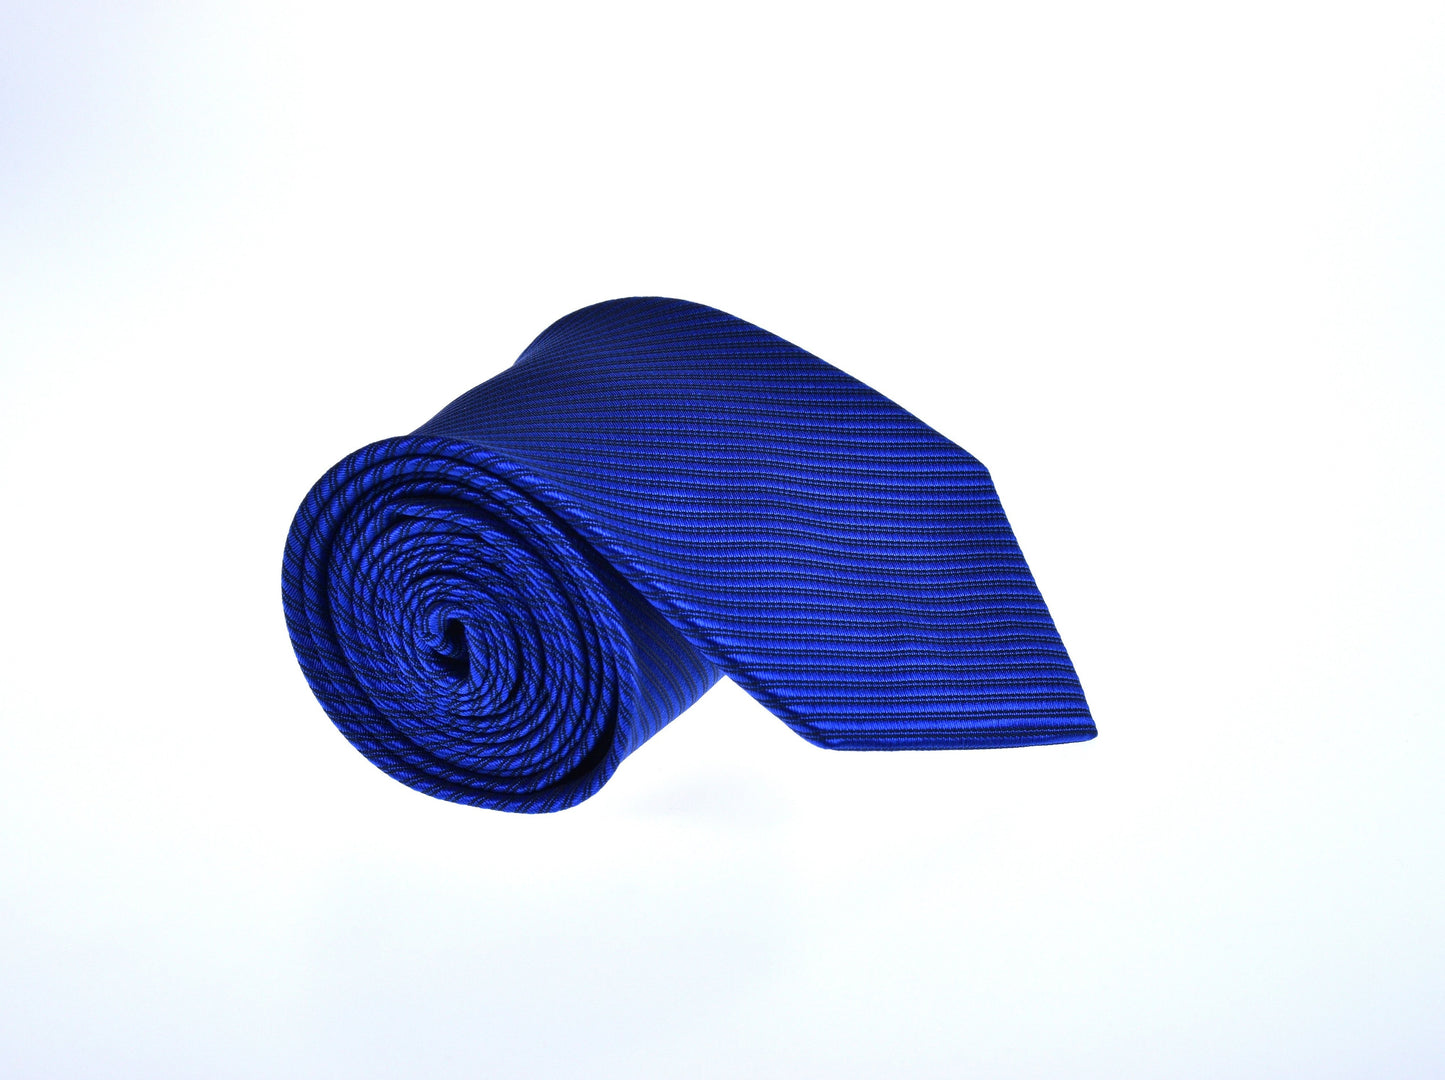 Mørkeblått slips med sorte linjer